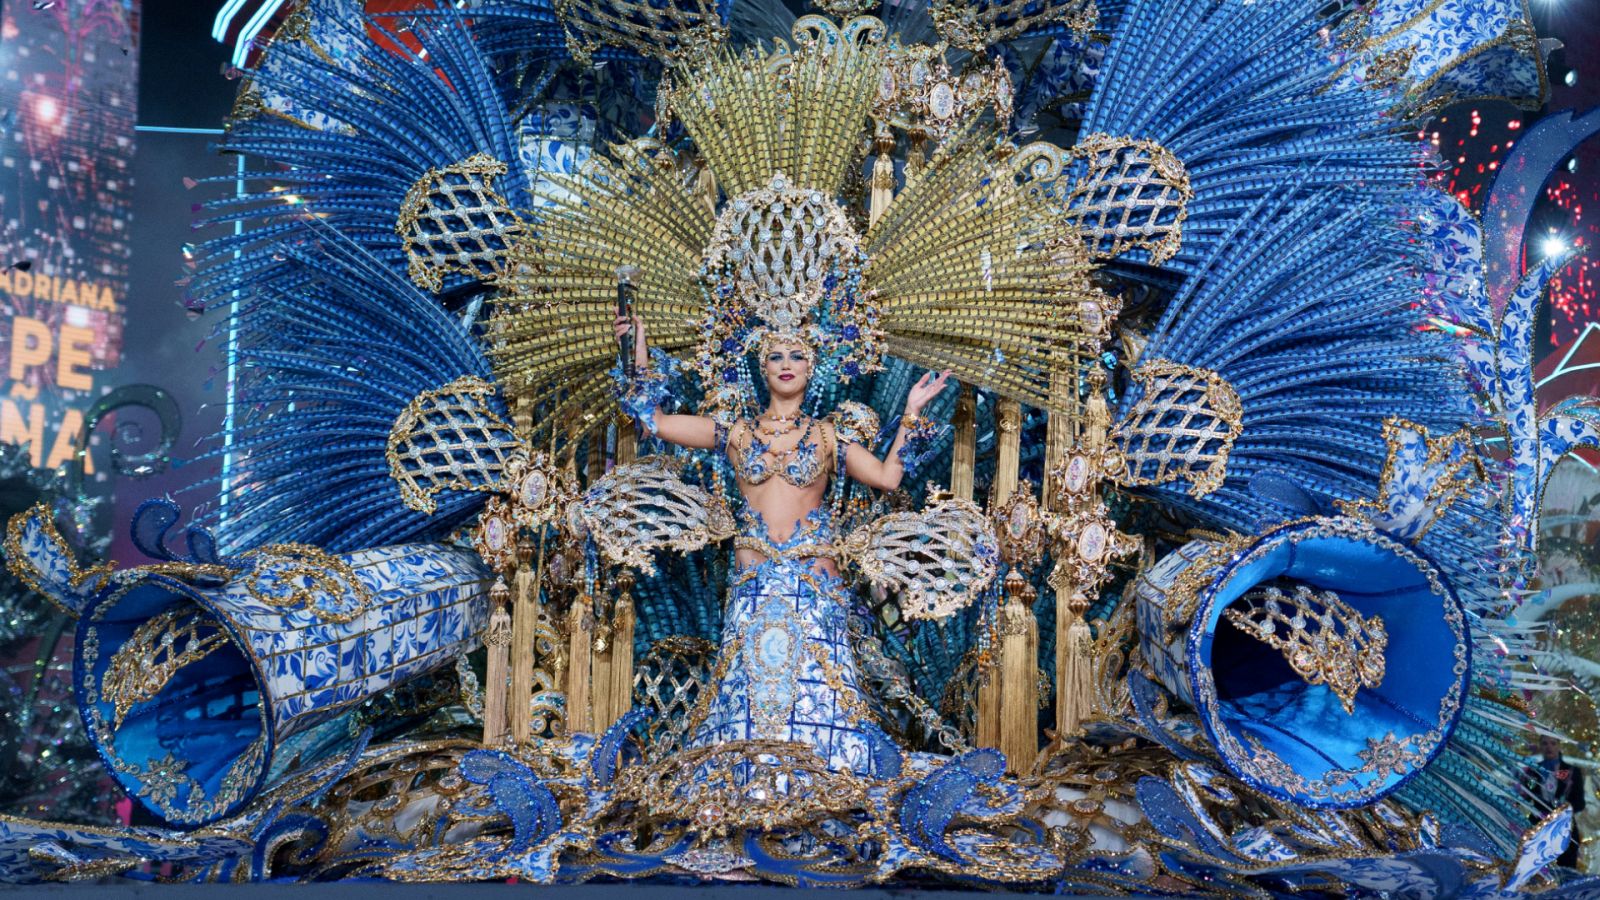 Carnaval de Canarias - Carnaval de Santa Cruz de Tenerife 2023. Gala elección de la reina